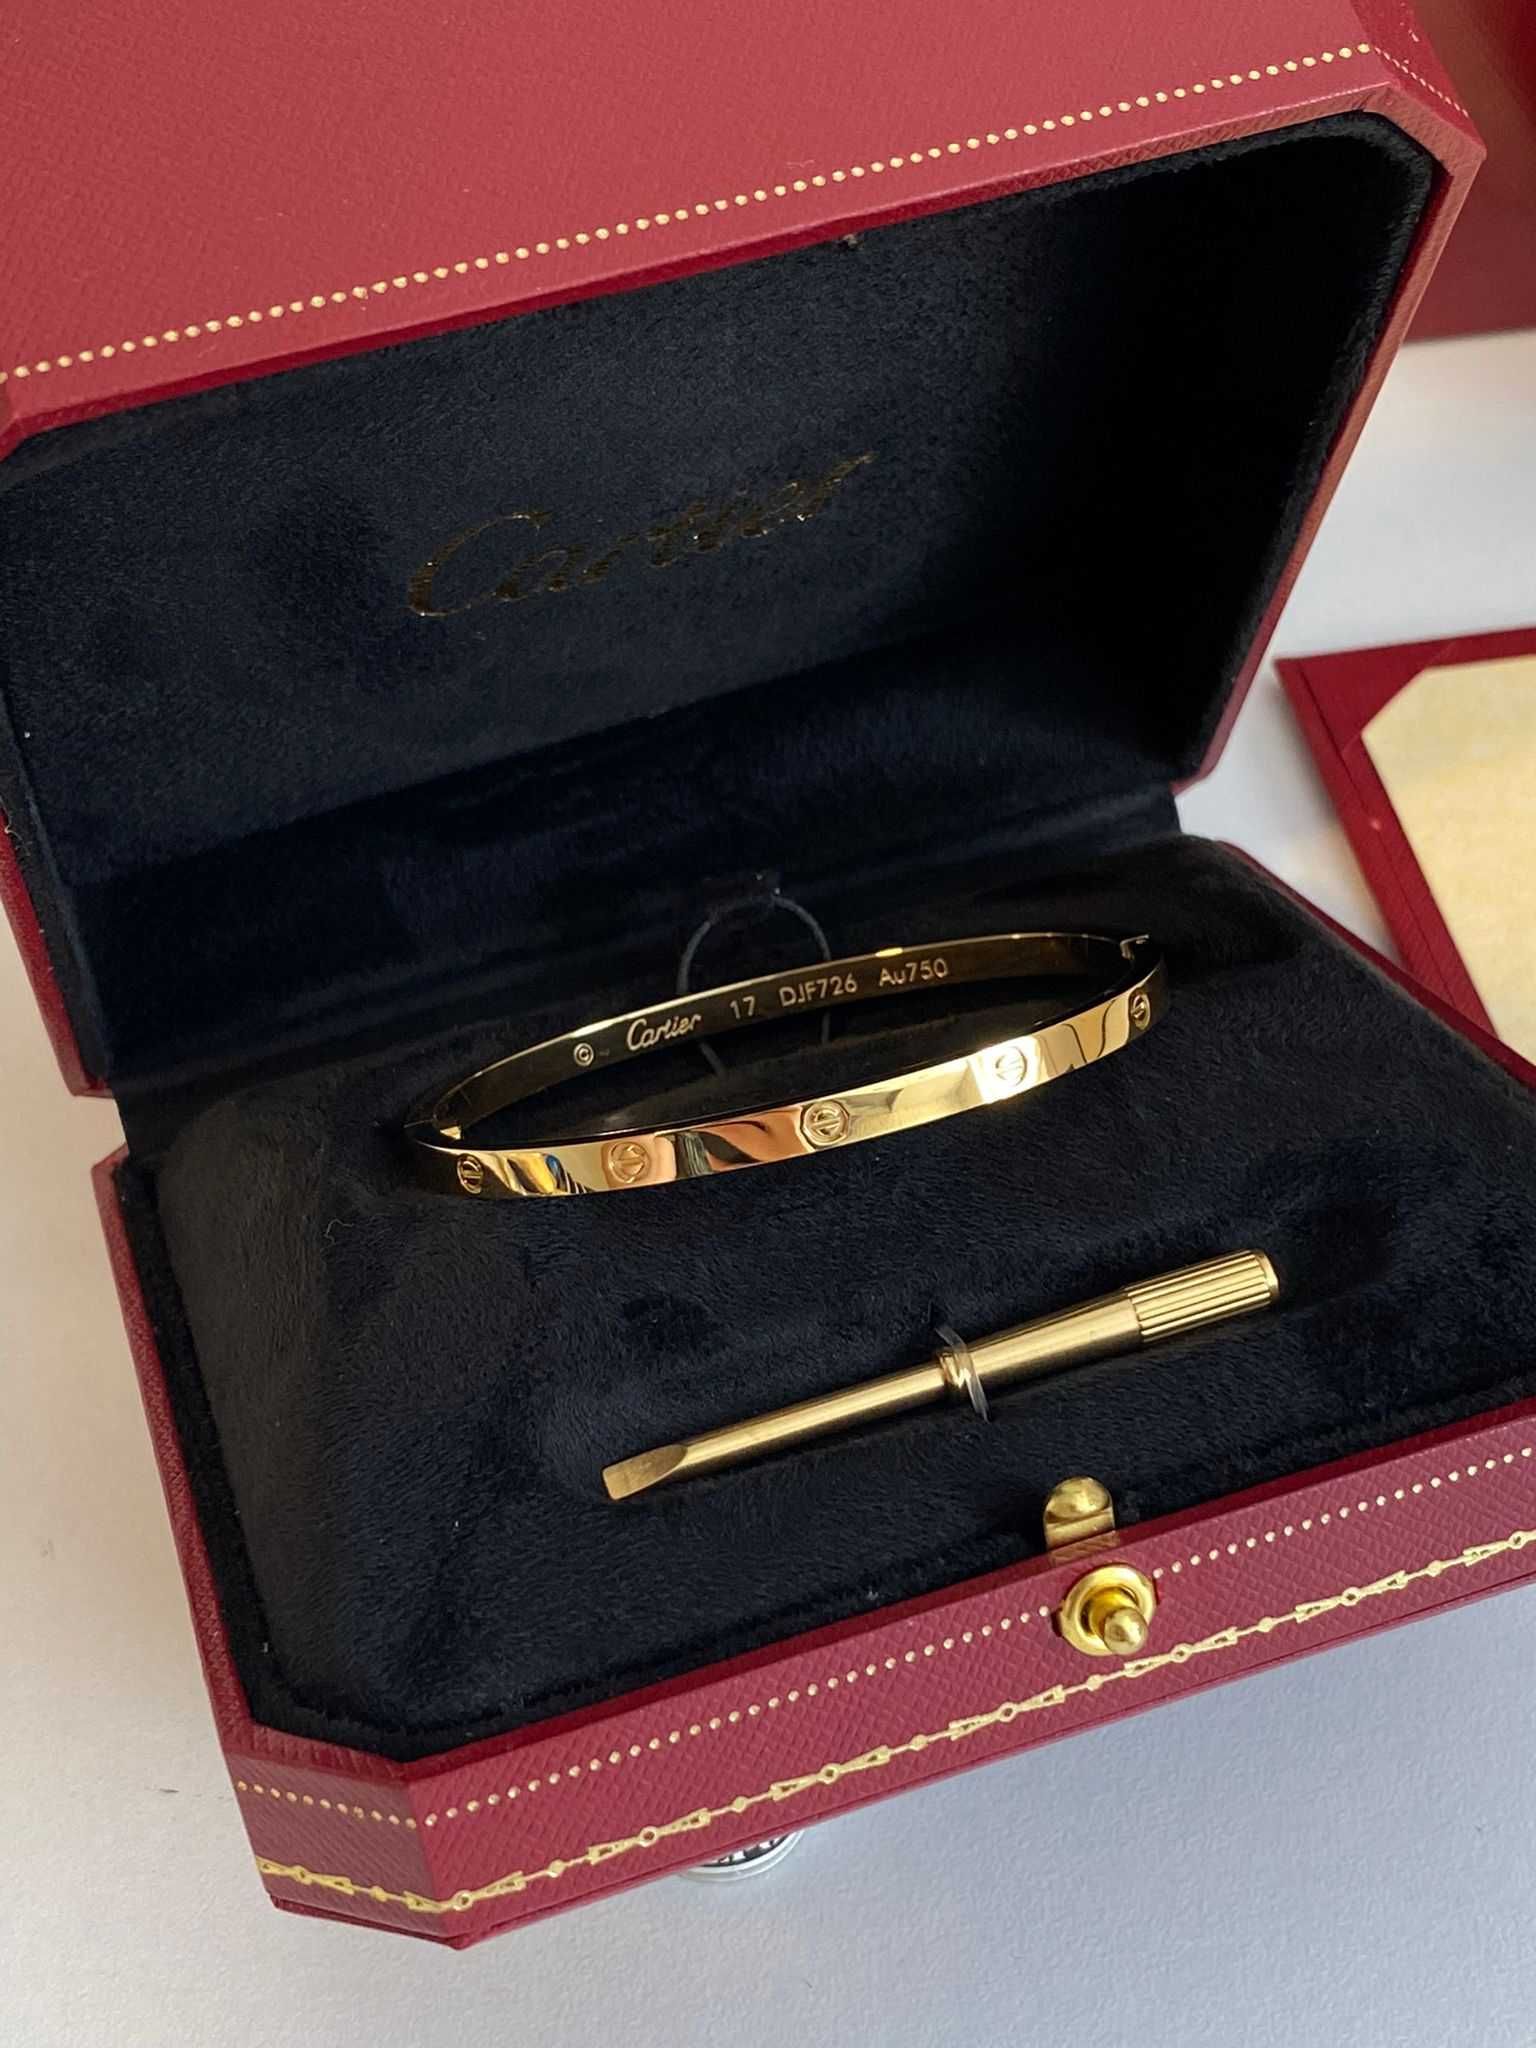 Brățară Cartier Love Slim 17 Gold 750 cu cutie